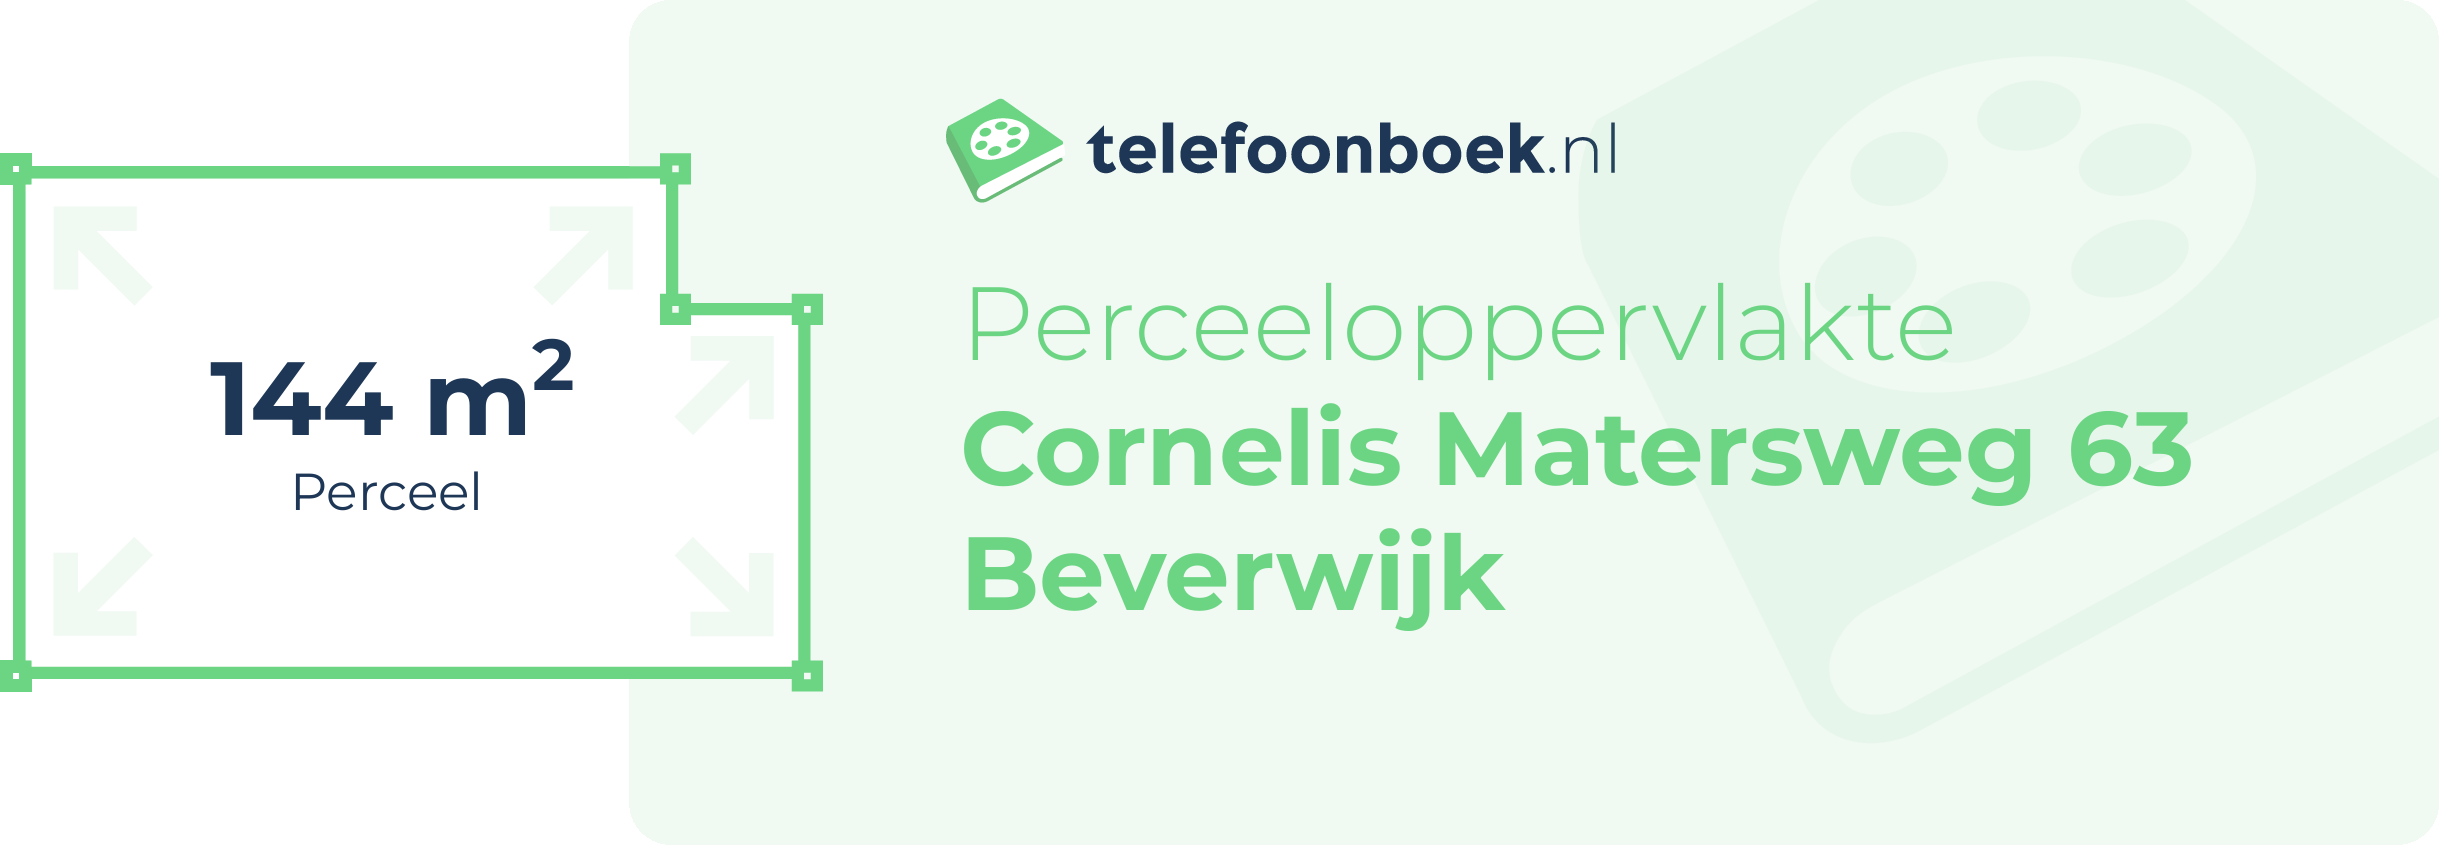 Perceeloppervlakte Cornelis Matersweg 63 Beverwijk